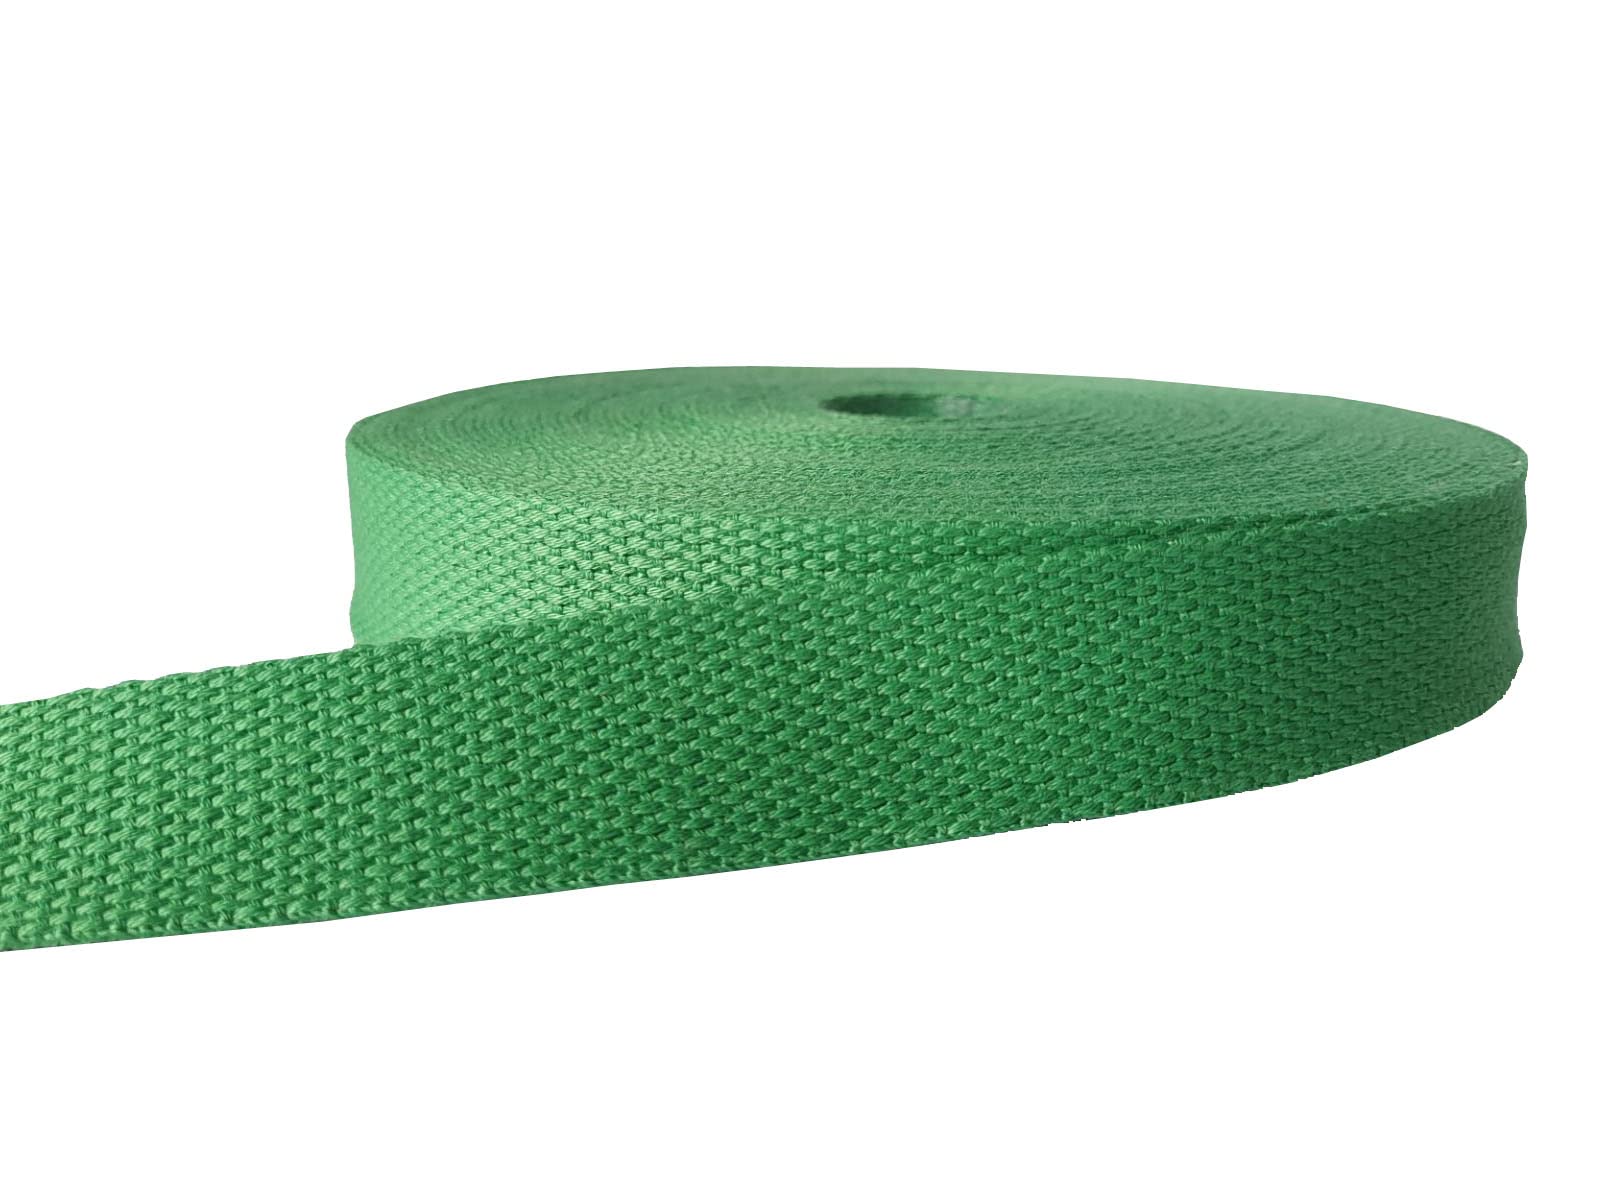 1.5 Inches / 38mm GREEN Bag Webbing 2mm Thick Cotton Blend Bag Strap Heavy  Duty Webbing Basket Weave Webbing Belt Bag Making UK Shop 